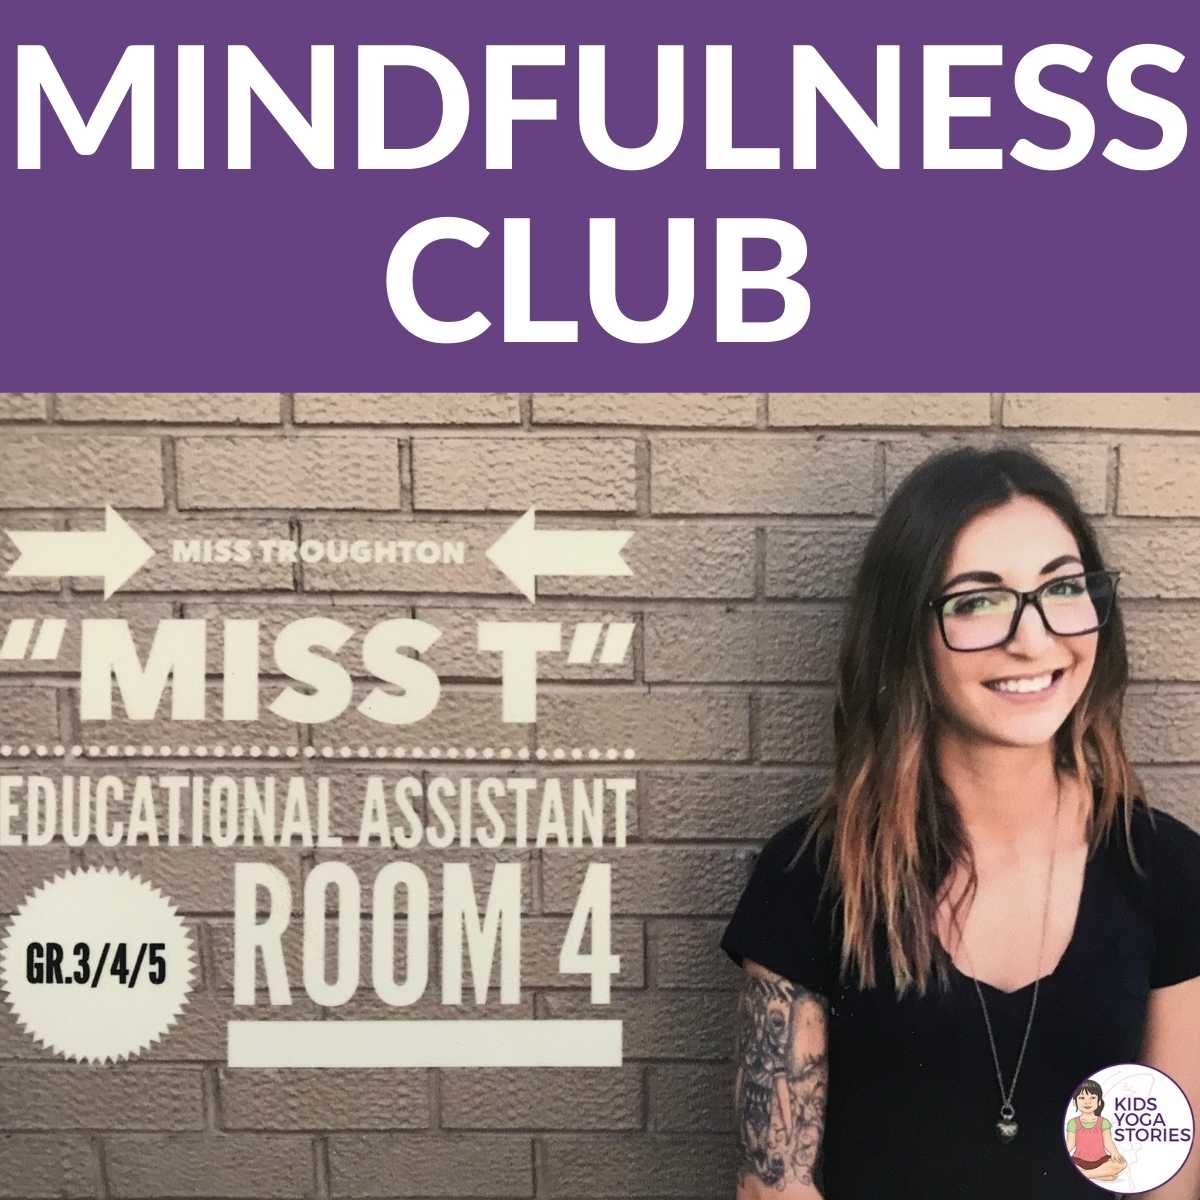 Mindfulness Club | Kids Yoga Stories